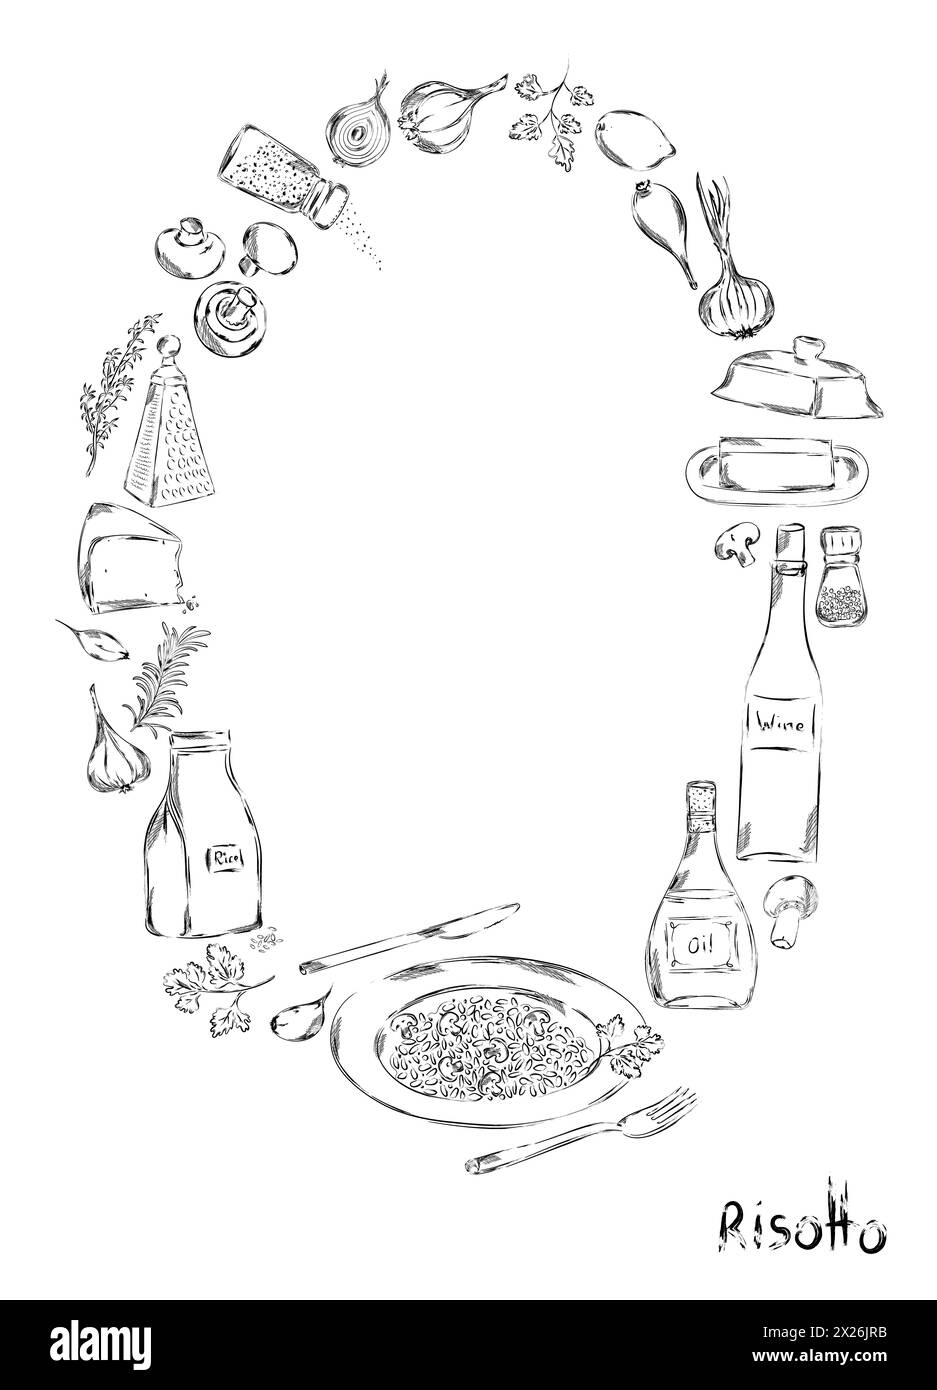 Poster risotto grafico, illustrazione vettoriale disegnata a mano. Ingredienti per ristorante italiano o cucina mediterranea. risotto elementi alimentari clip art. Gastronomia Foto Stock